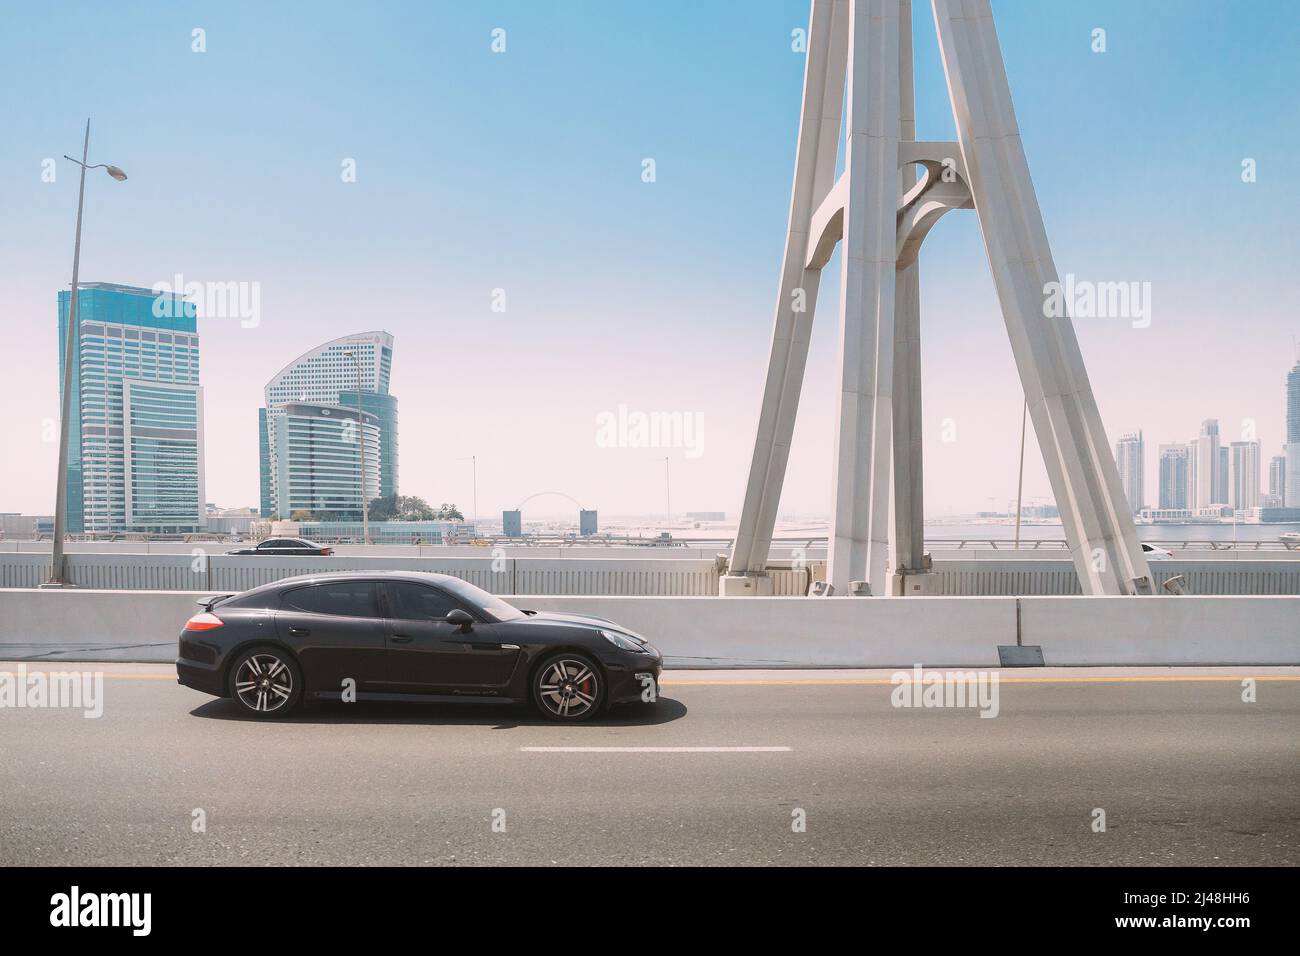 Dubai, Emirati Arabi Uniti - 28 maggio 2021: Black Porsche Panamera auto in movimento in città strada. Porsche Panamera è una vettura di lusso di medie dimensioni Foto Stock